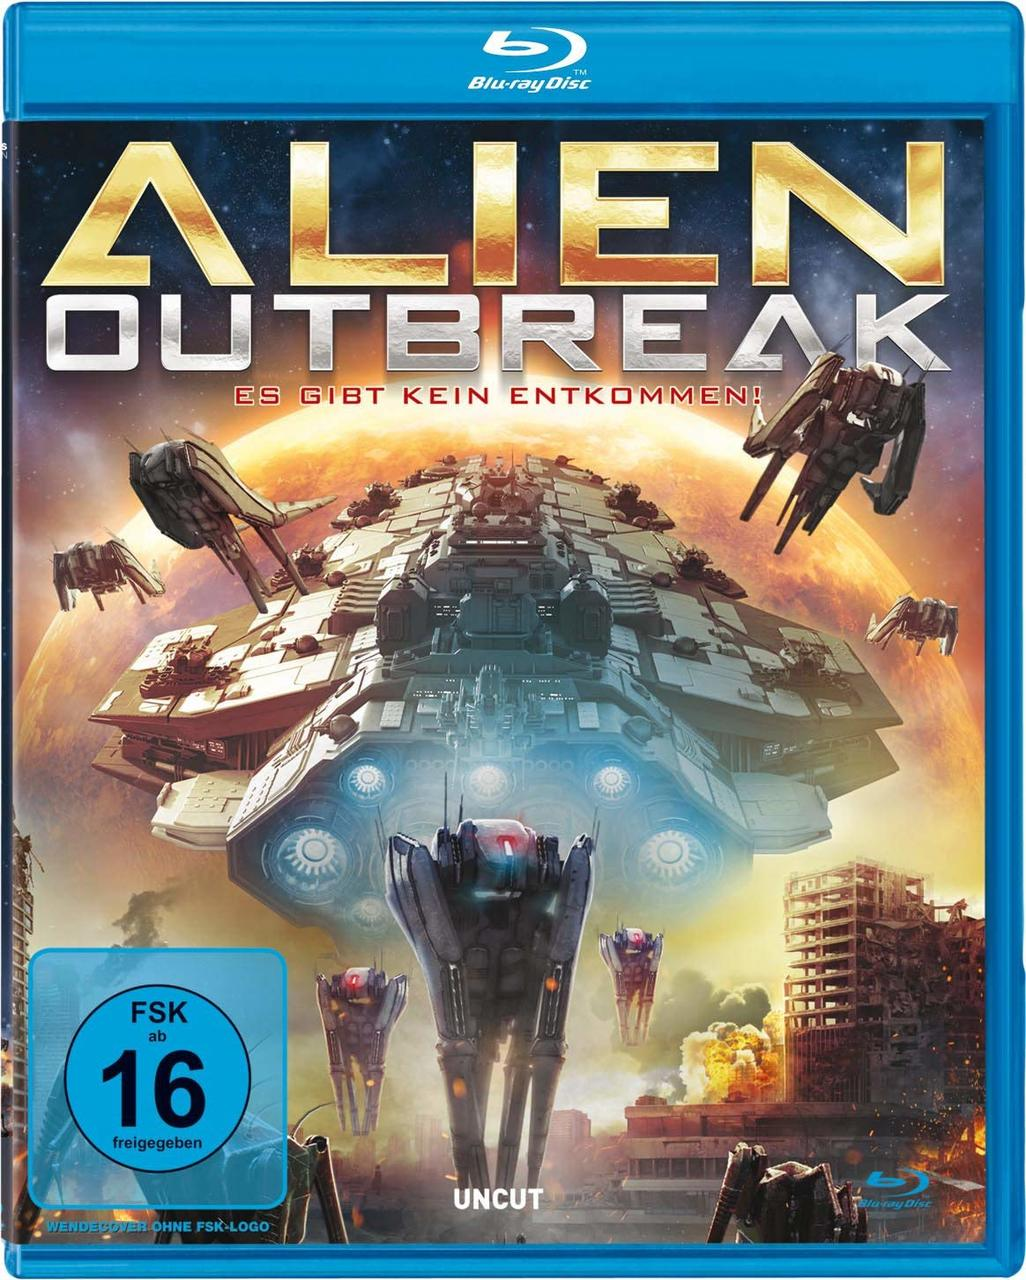 Alien Outbreak Blu-ray